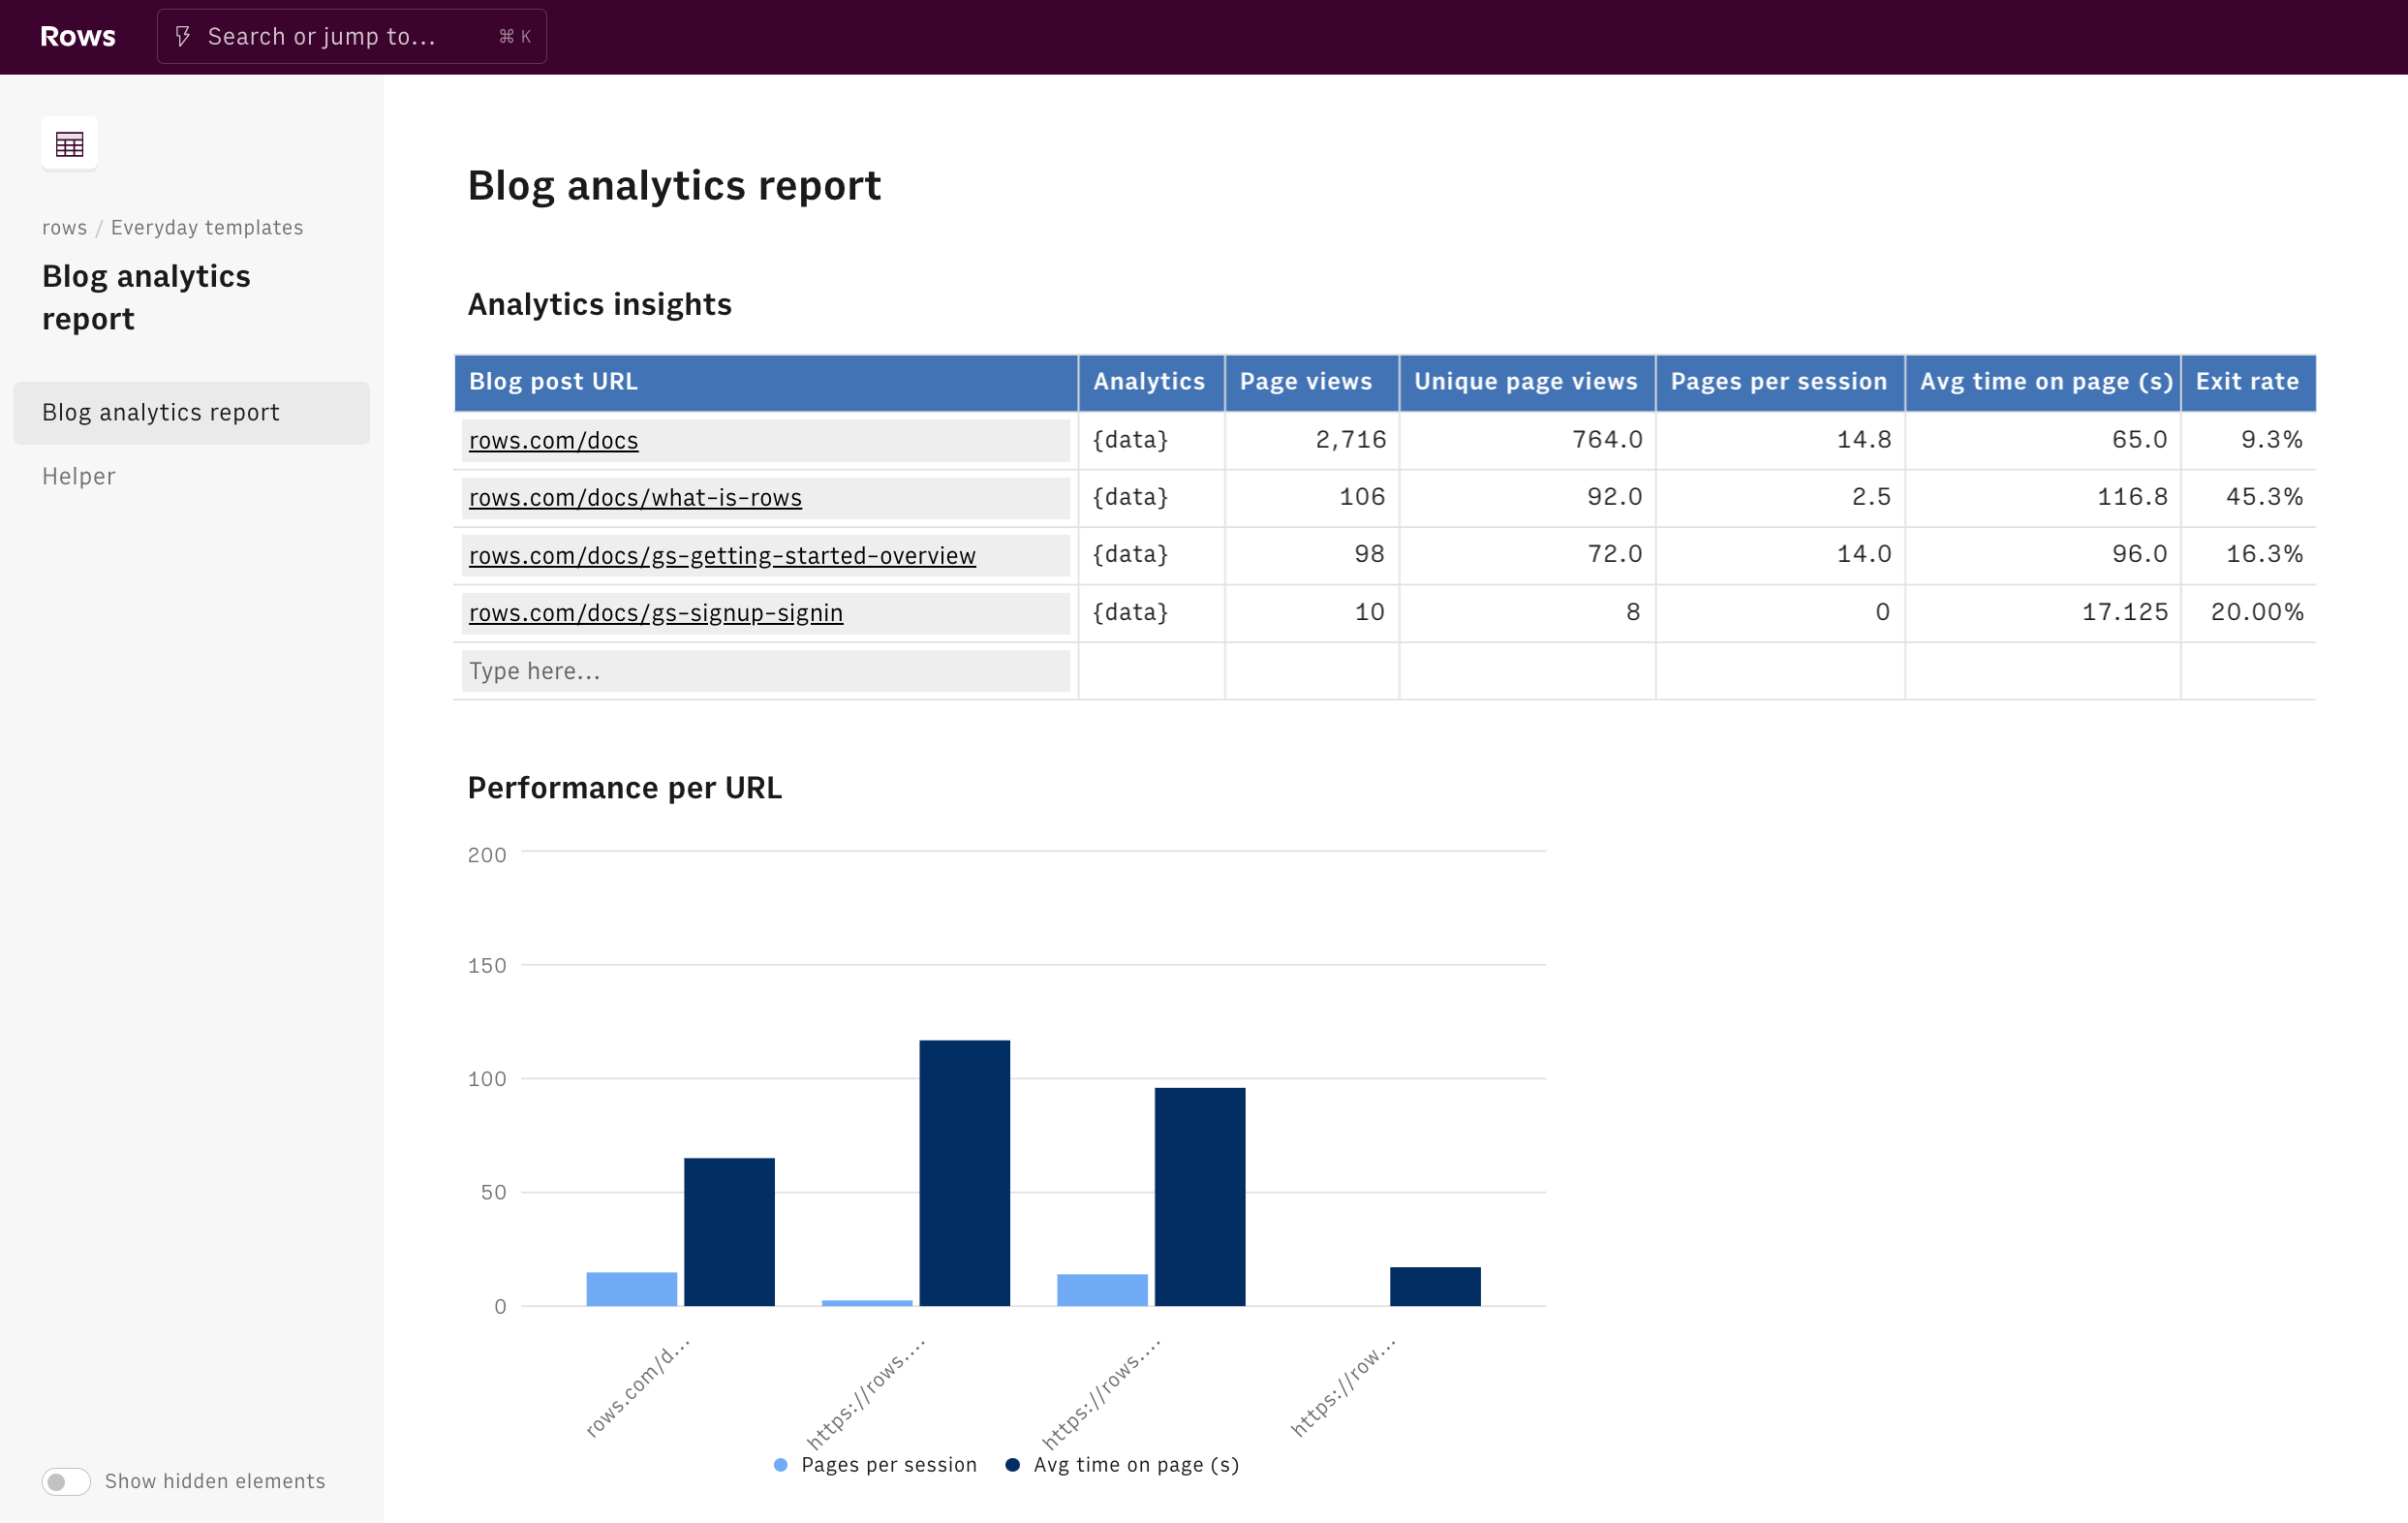 blog analytics report